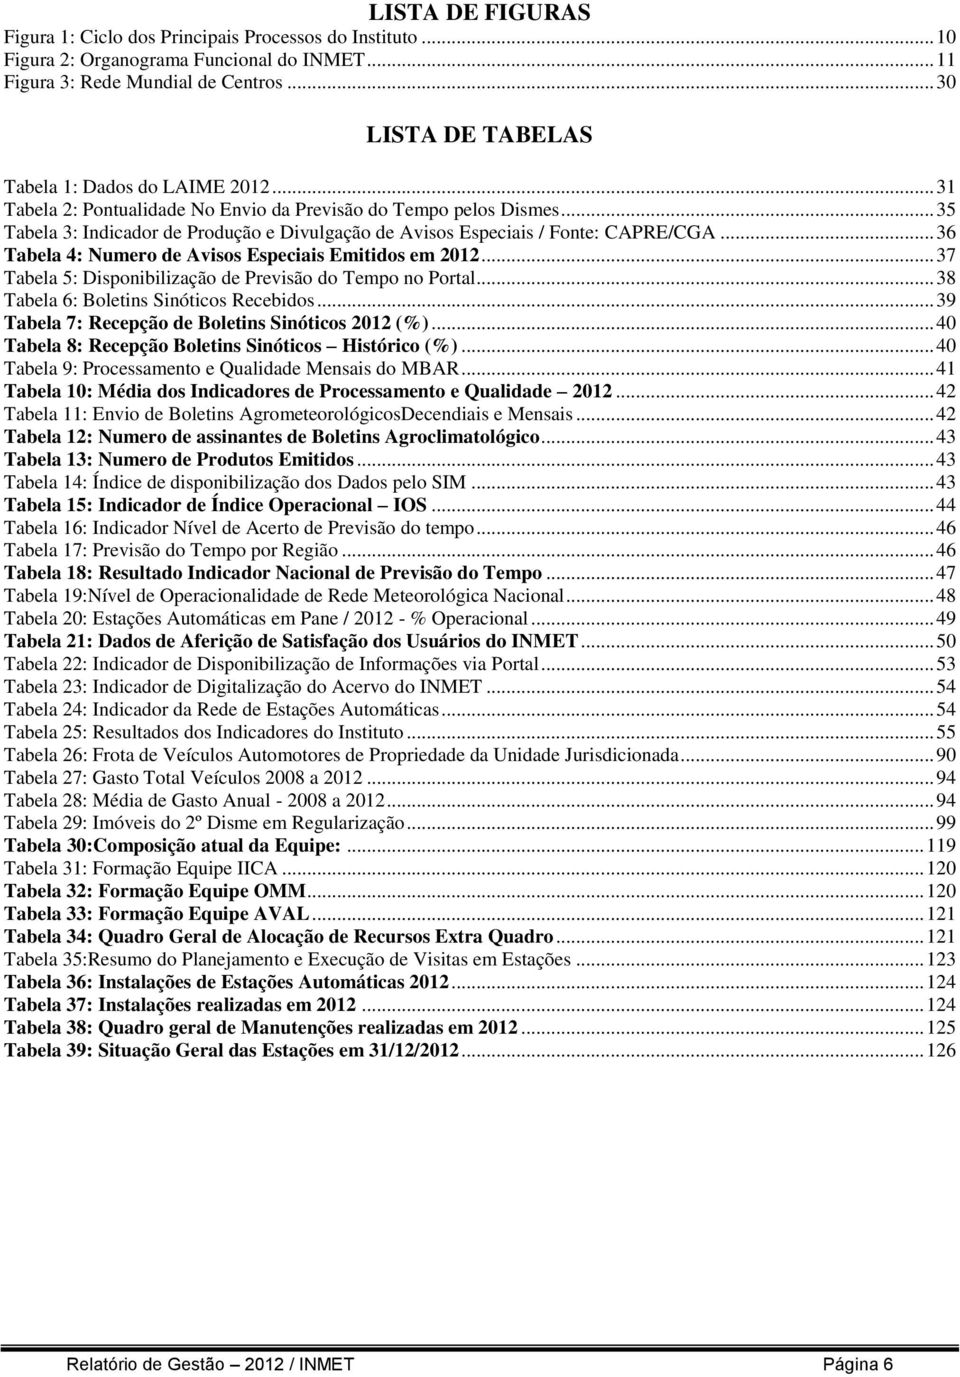 .. 35 Tabela 3: Indicador de Produção e Divulgação de Avisos Especiais / Fonte: CAPRE/CGA... 36 Tabela 4: Numero de Avisos Especiais Emitidos em 2012.